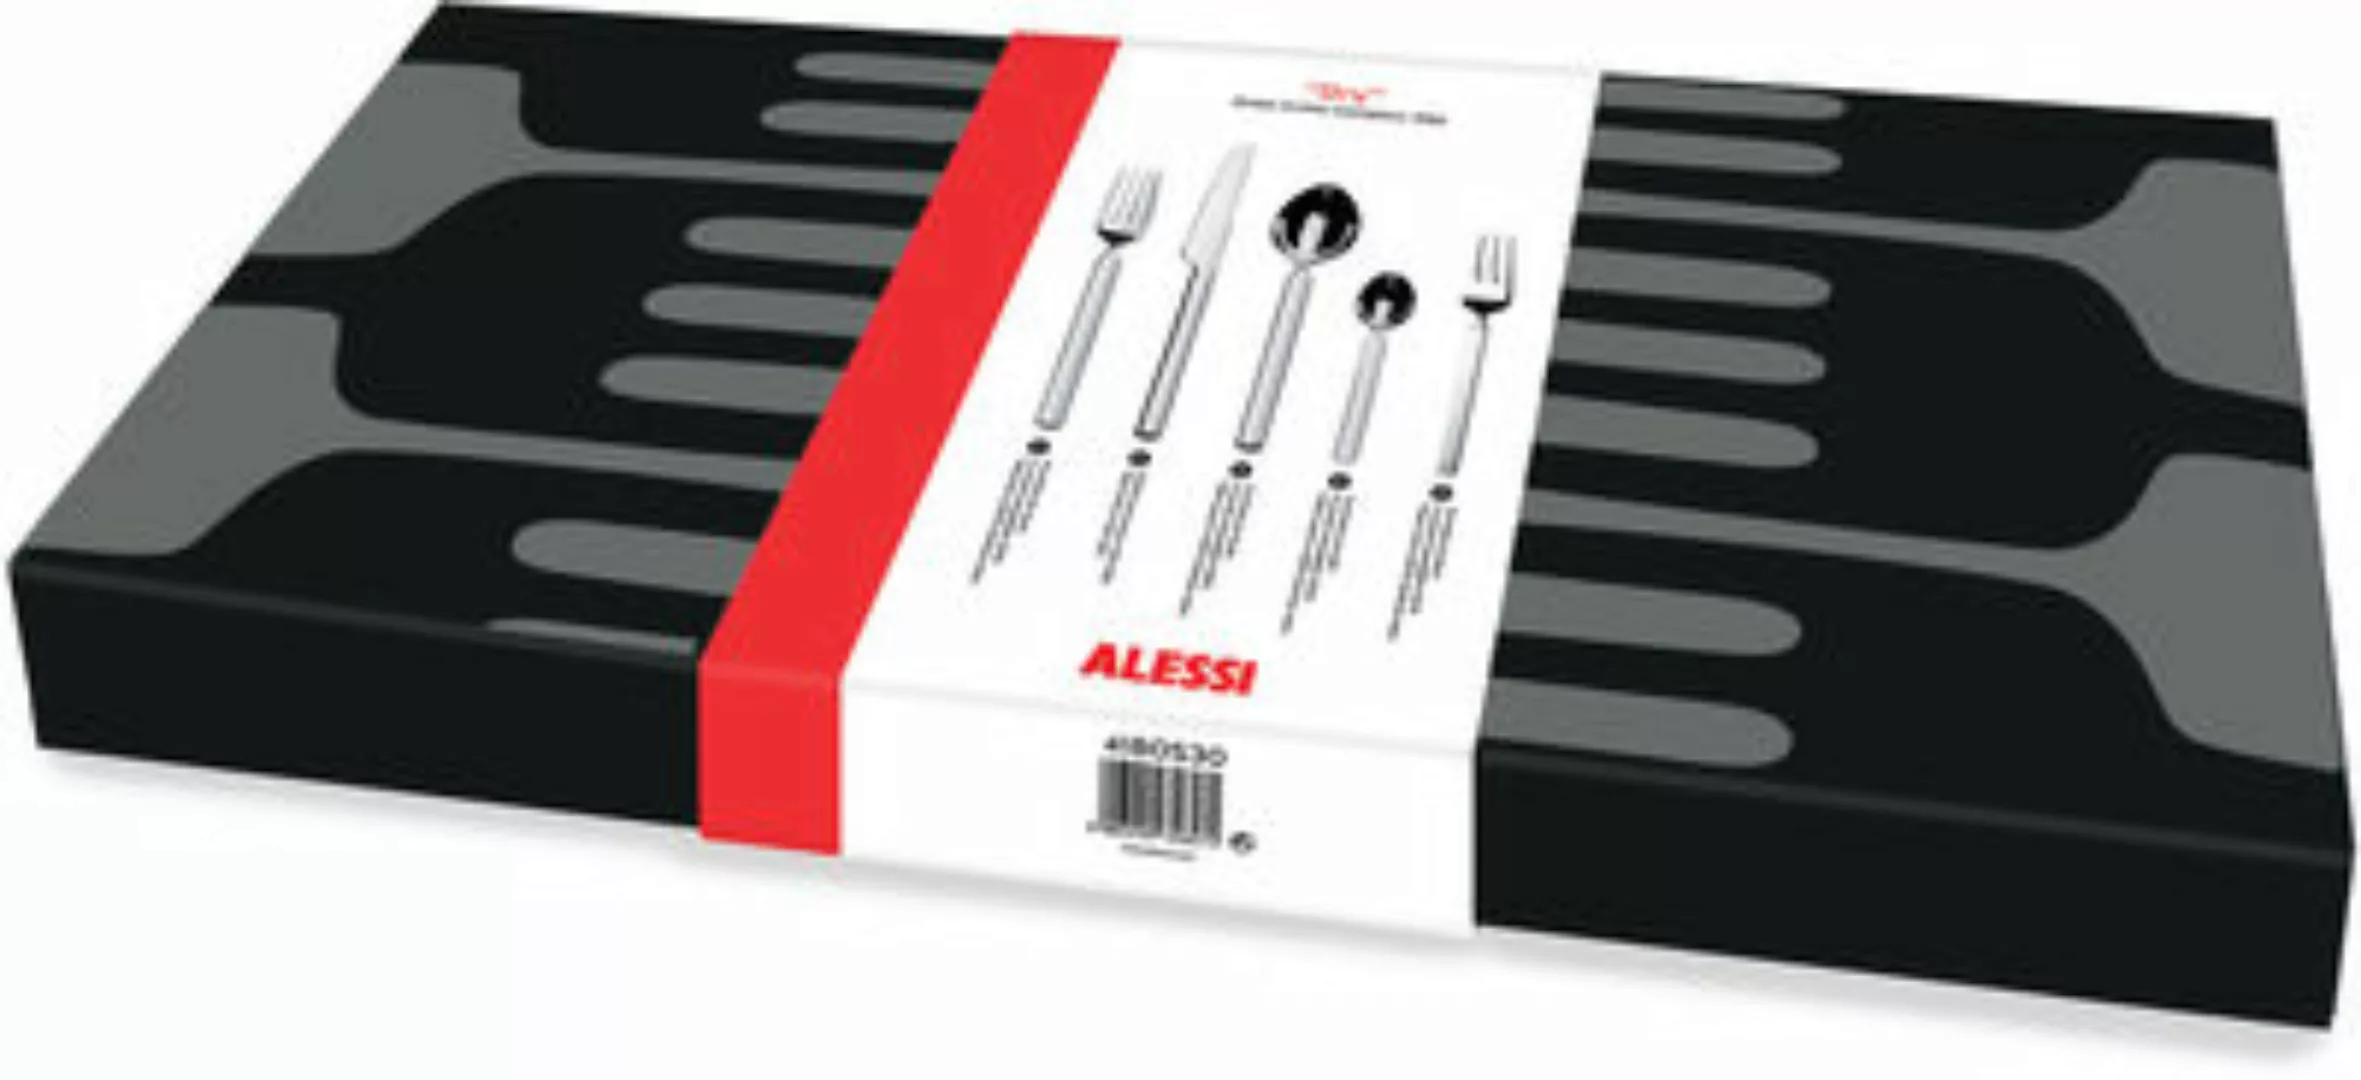 Alessi - Dry Besteckgarnitur 30tlg. - edelstahl/glänzend poliert/mattierter günstig online kaufen